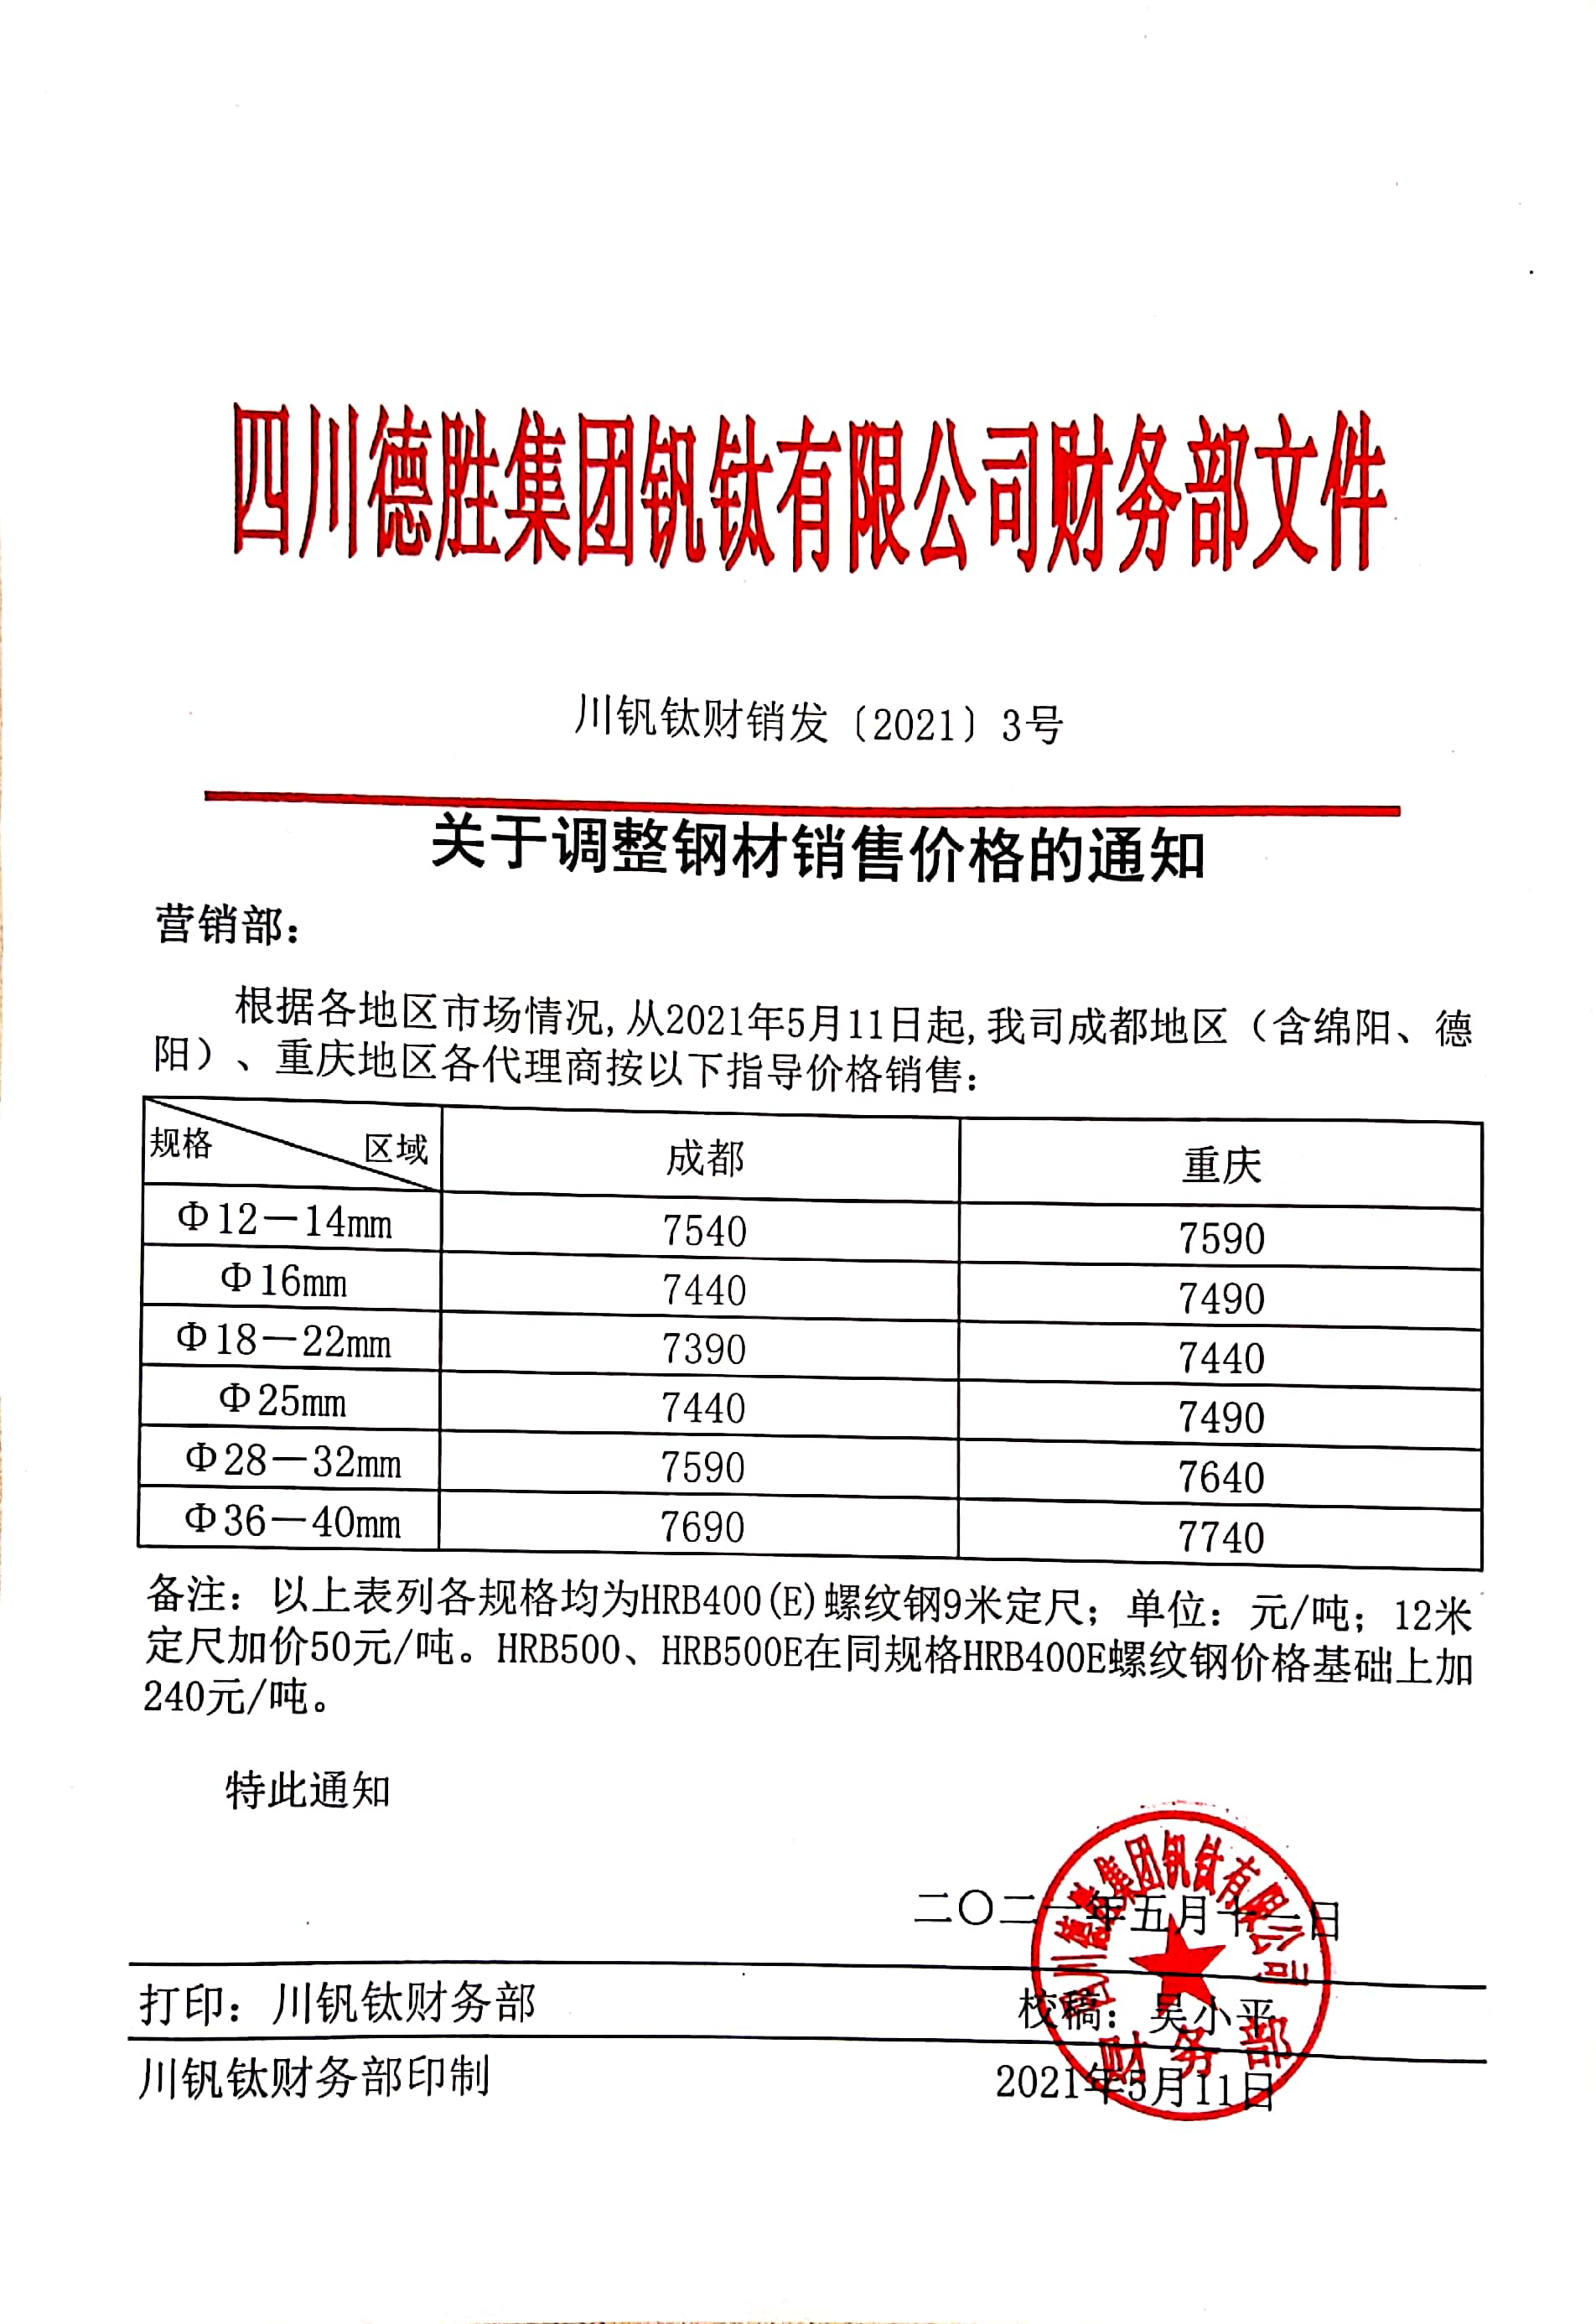 大发888老虎机5月11日钢材销售指导价